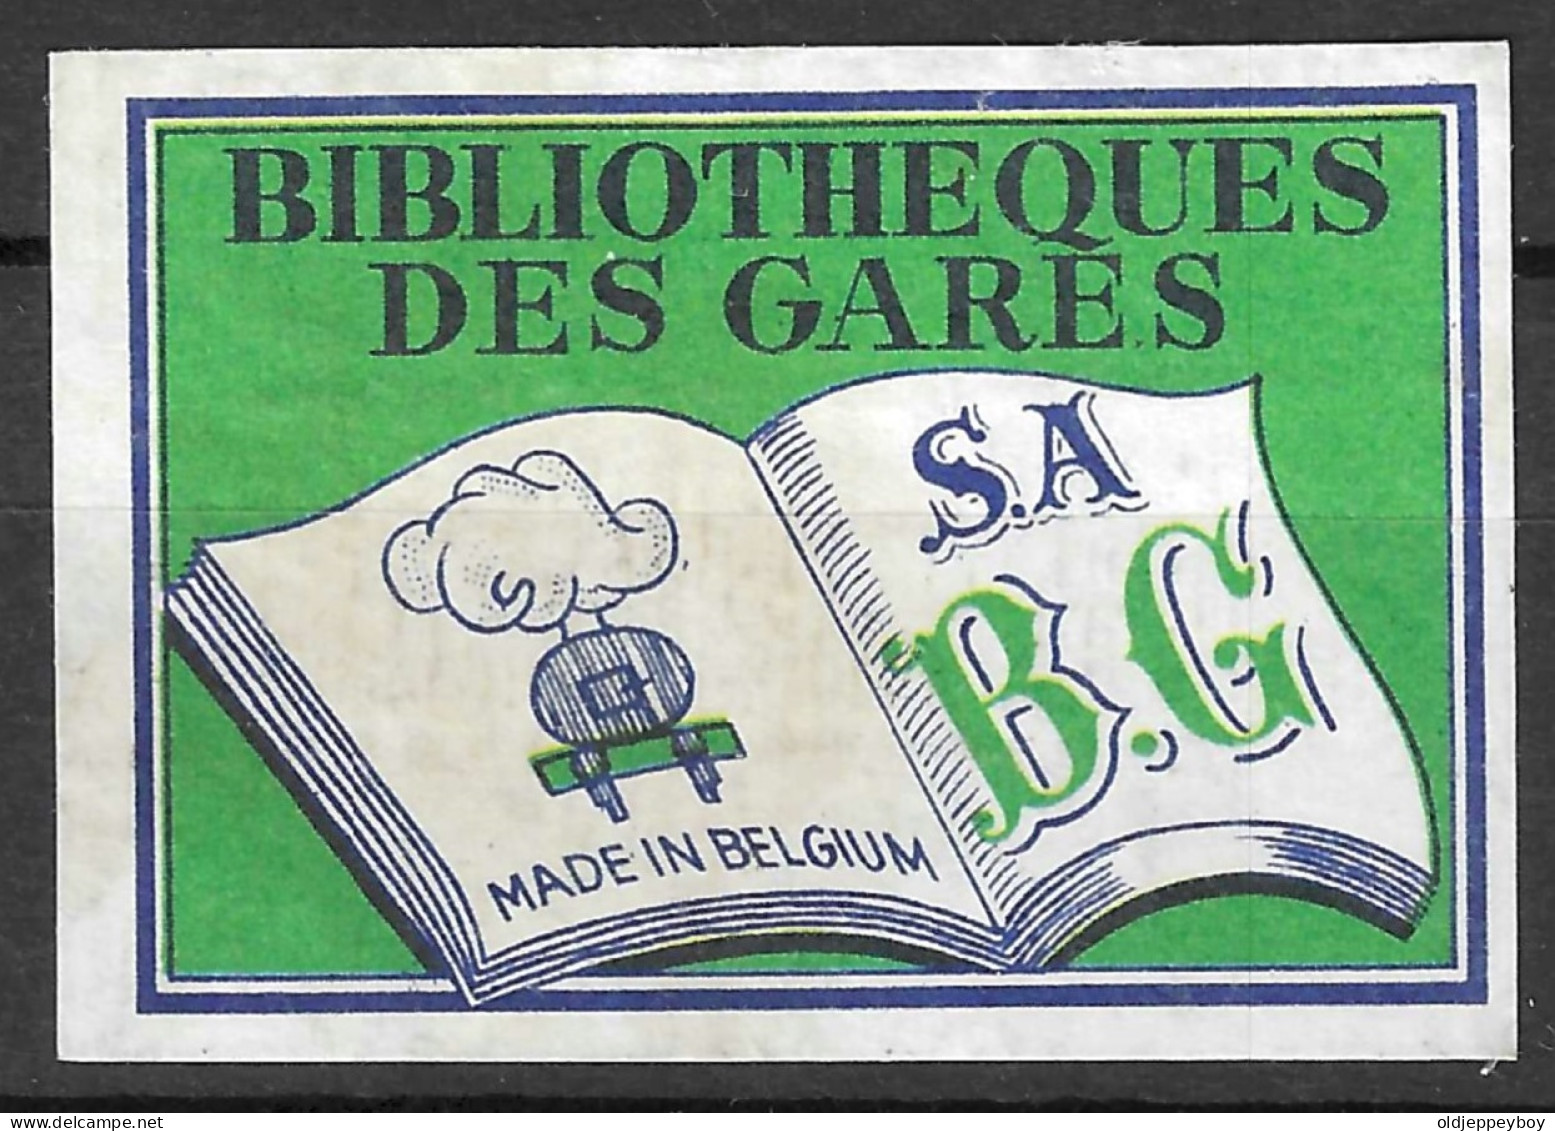  VINTAGE MATCHBOX LABEL BELGIUM BIBLIOTHEQUES DES GARES   5  X 3.5  Cm  - Luciferdozen - Etiketten